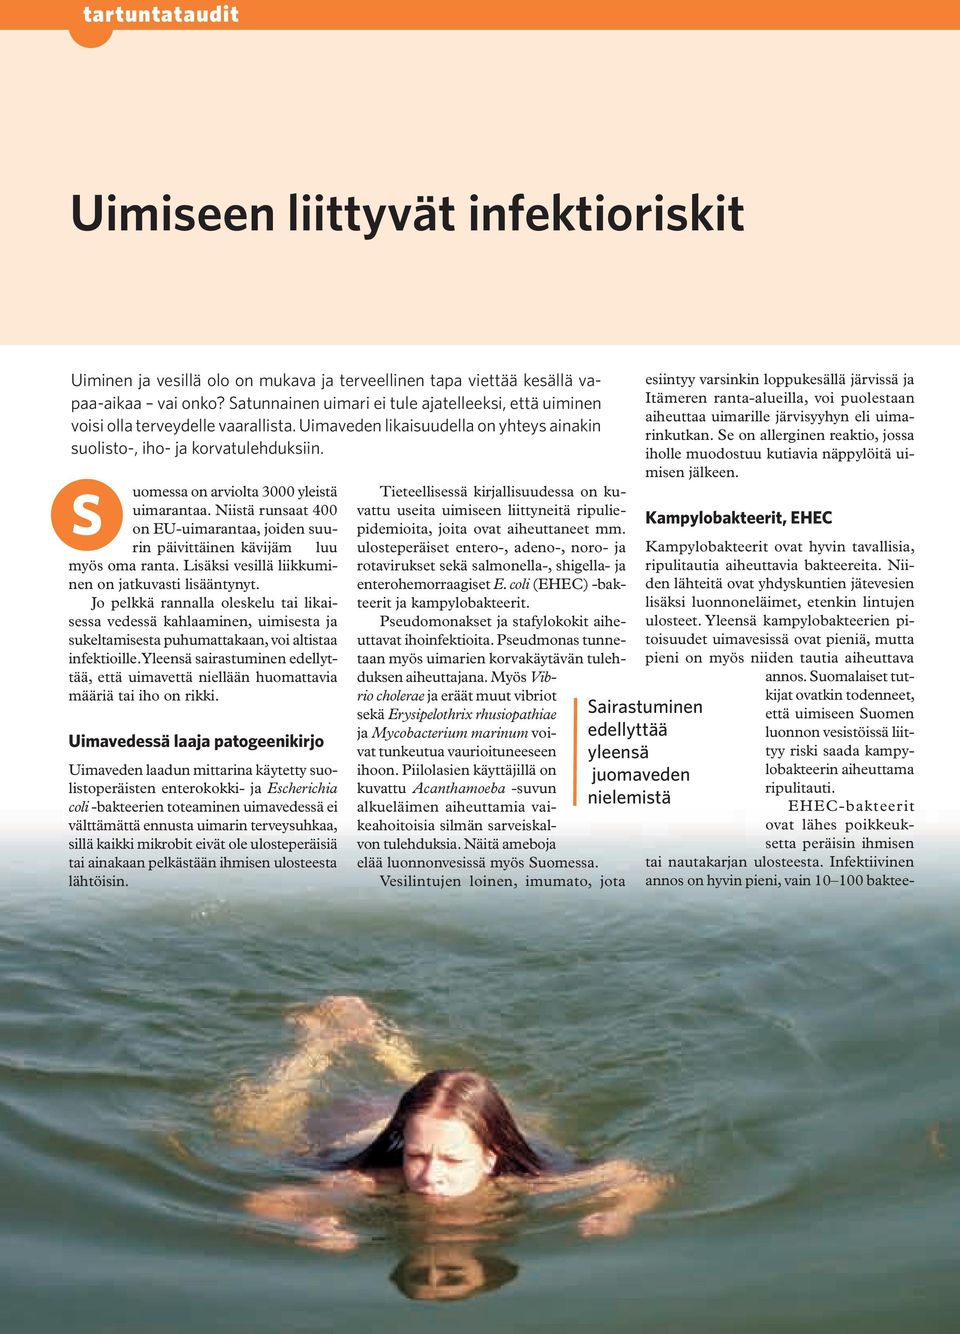 S uomessa on arviolta 3000 yleistä uimarantaa. Niistä runsaat 400 on EU-uimarantaa, joiden suurin päivittäinen kävijäm luu myös oma ranta. Lisäksi vesillä liikkuminen on jatkuvasti lisääntynyt.